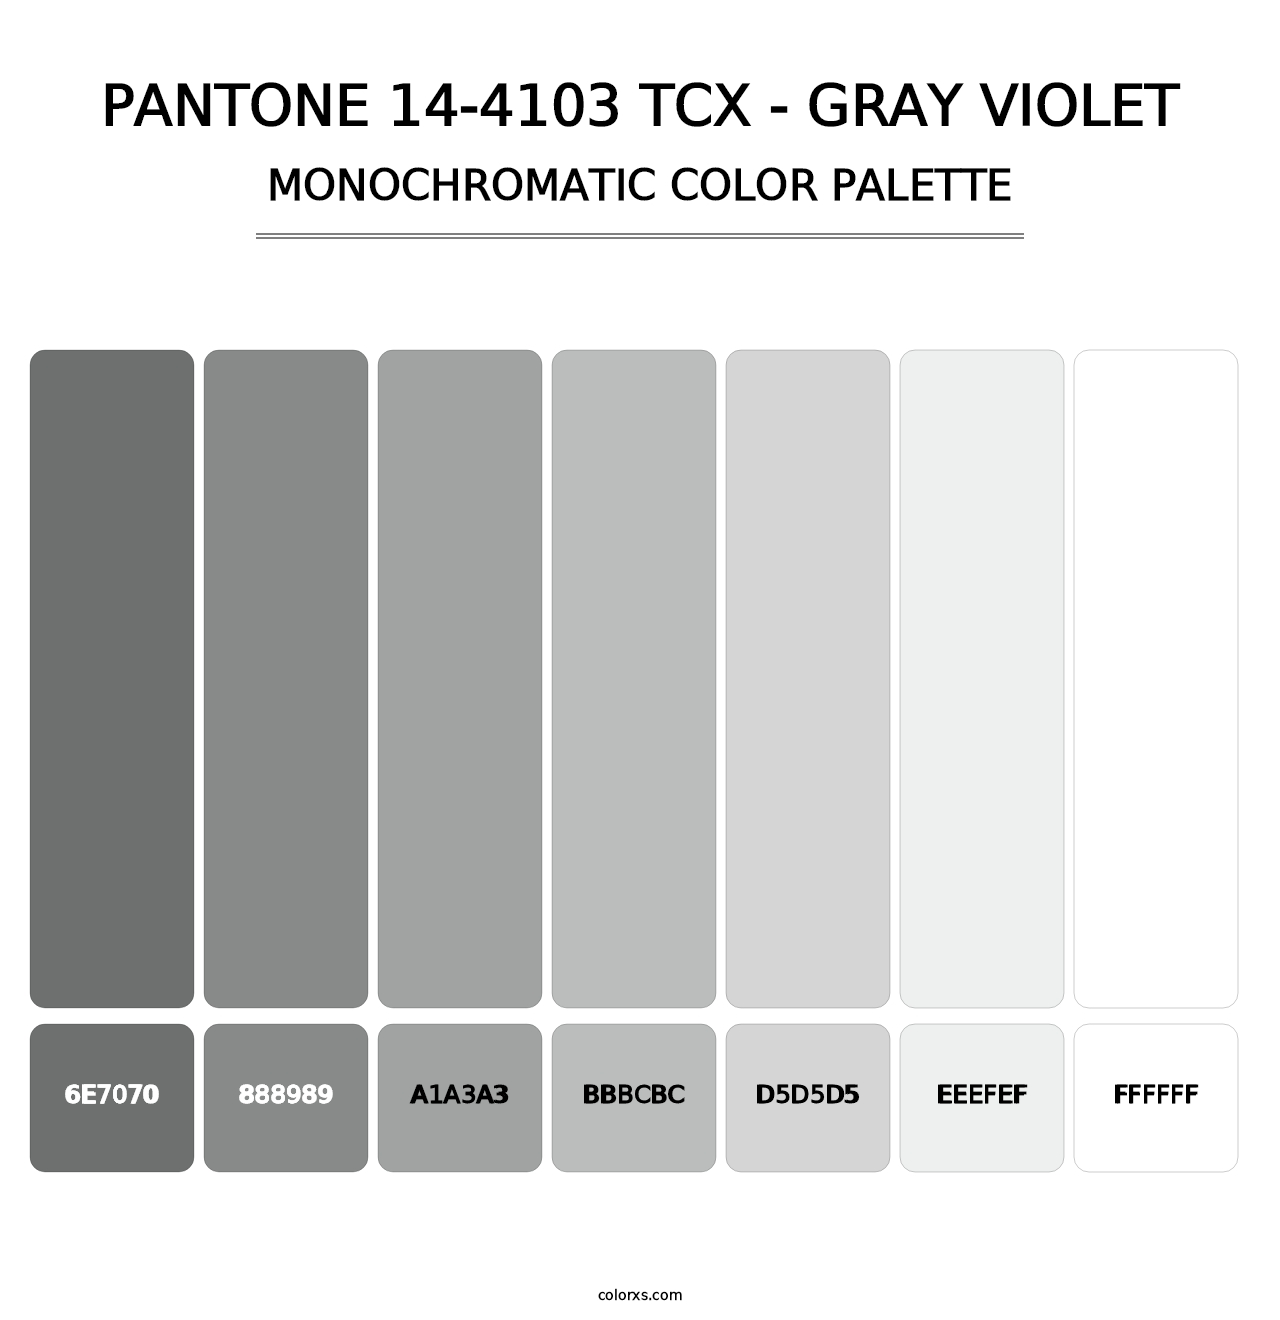 PANTONE 14-4103 TCX - Gray Violet - Monochromatic Color Palette